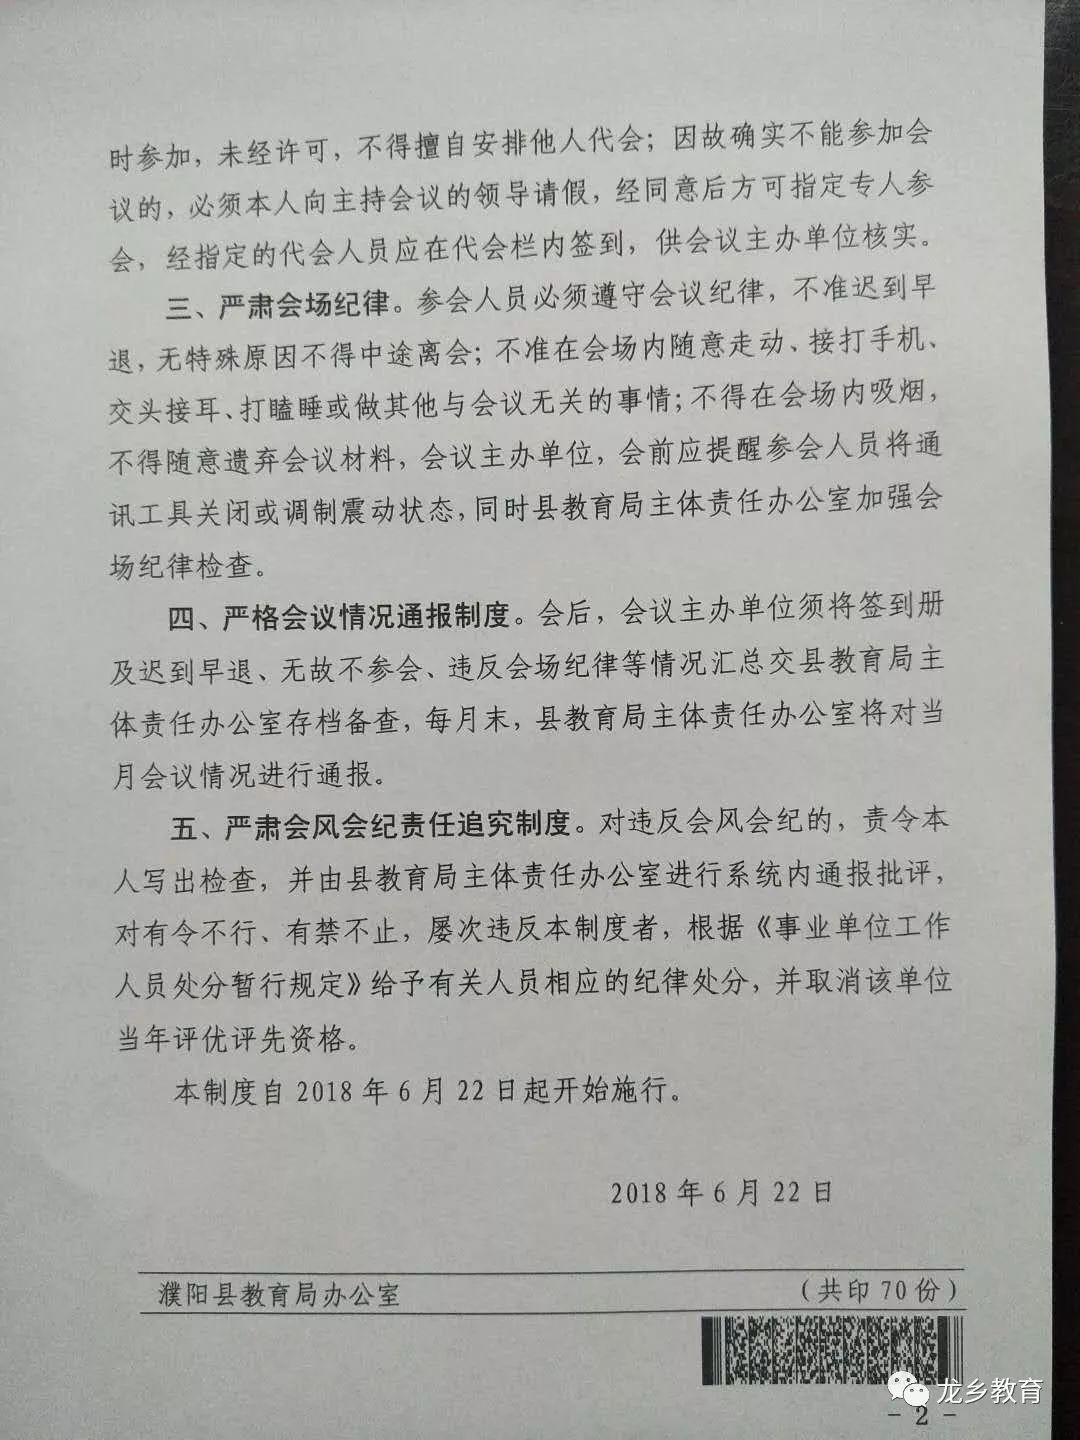 濮阳县教育局:关于严肃会风会纪制度